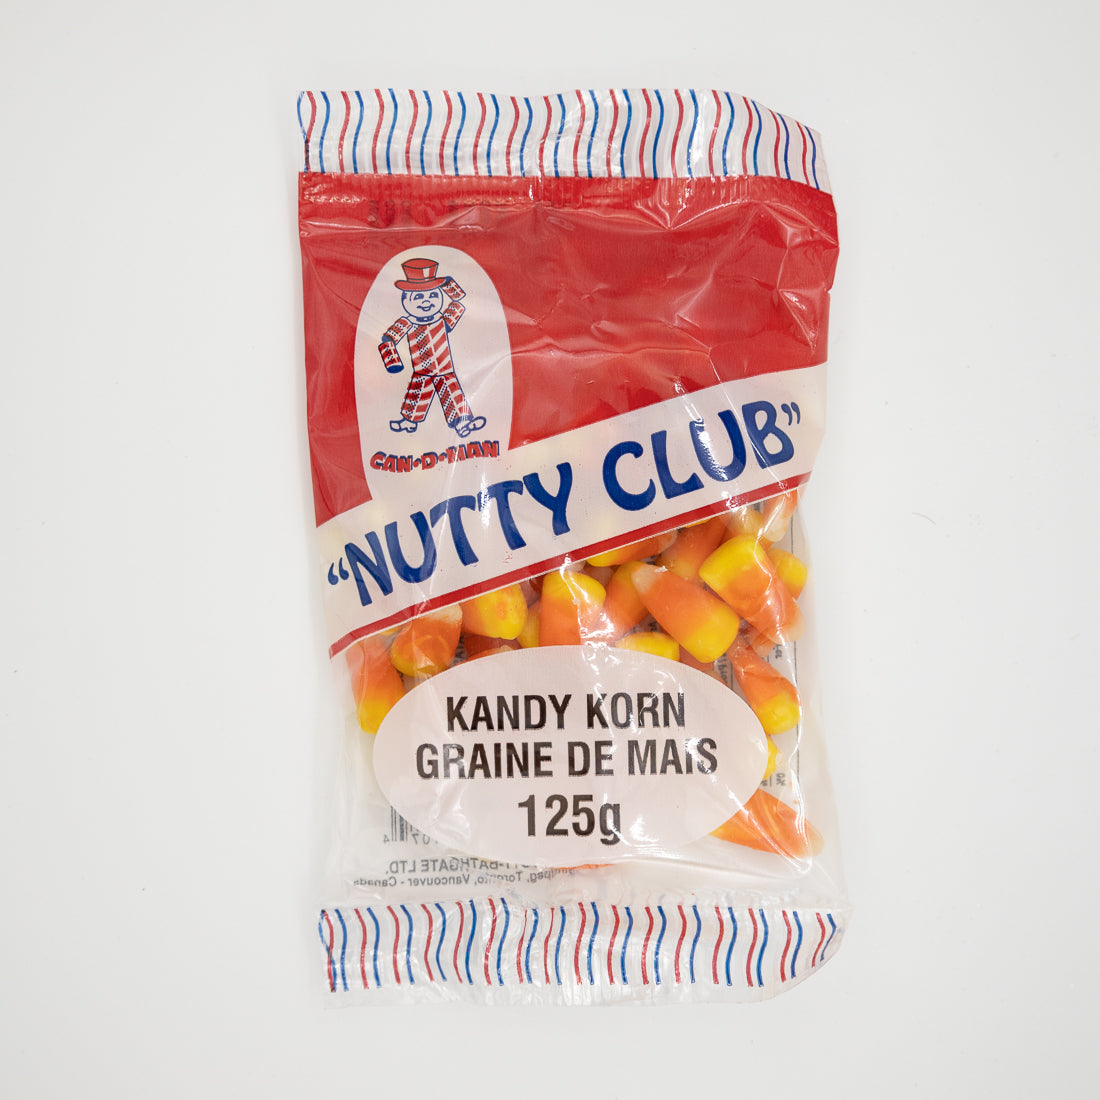 Nutty Club Kandy Korn